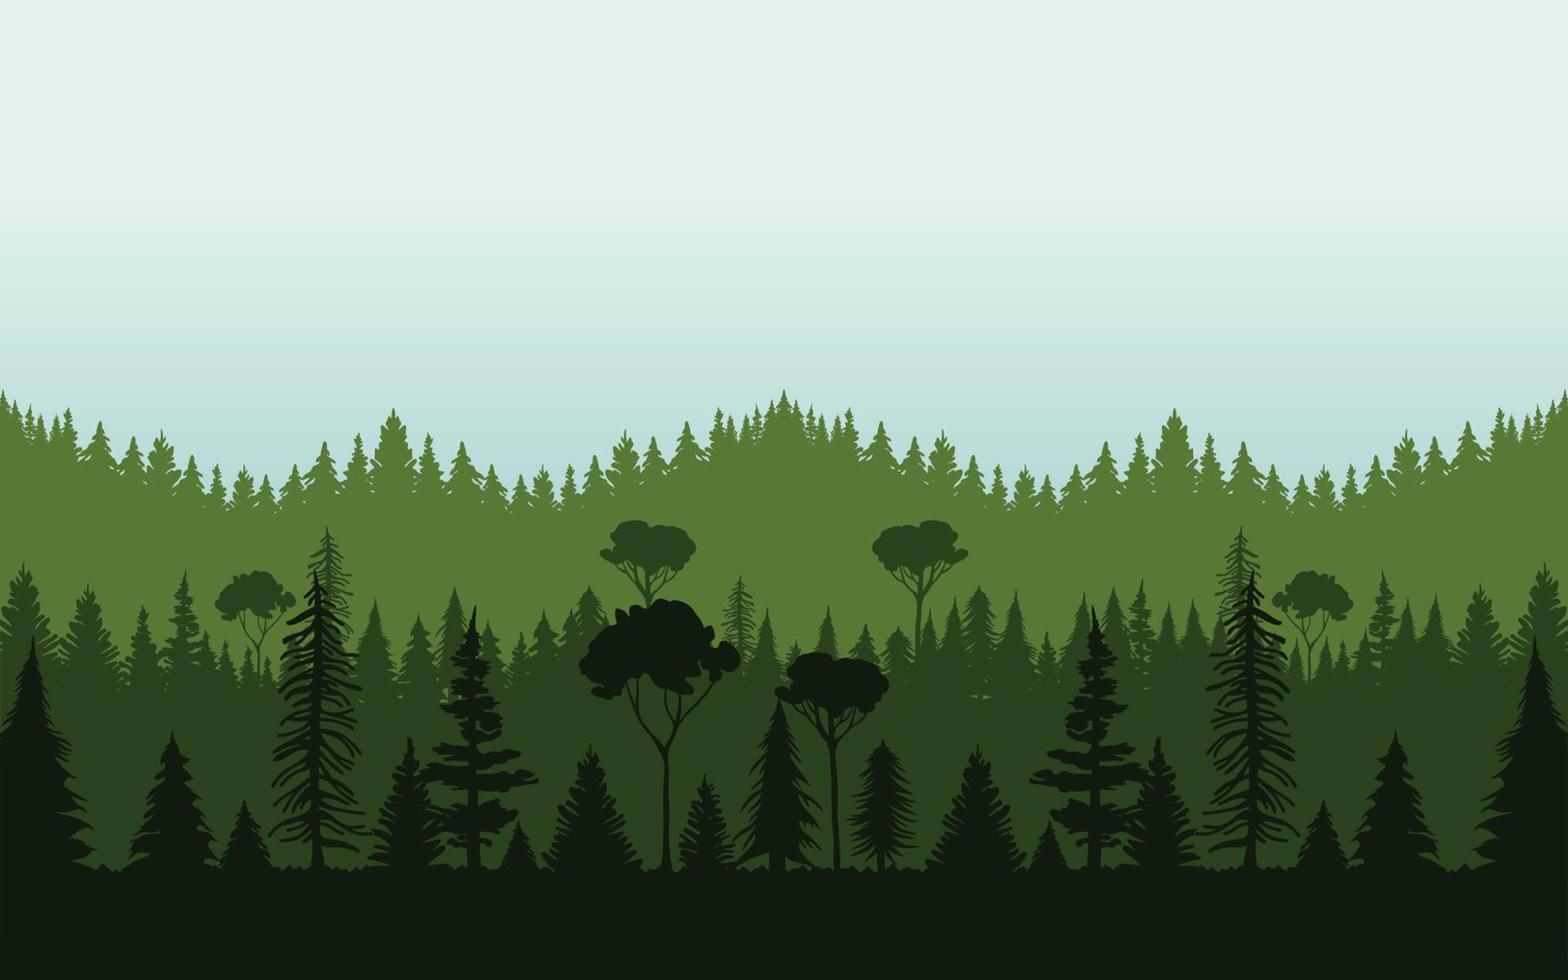 ilustração da paisagem da floresta vetor